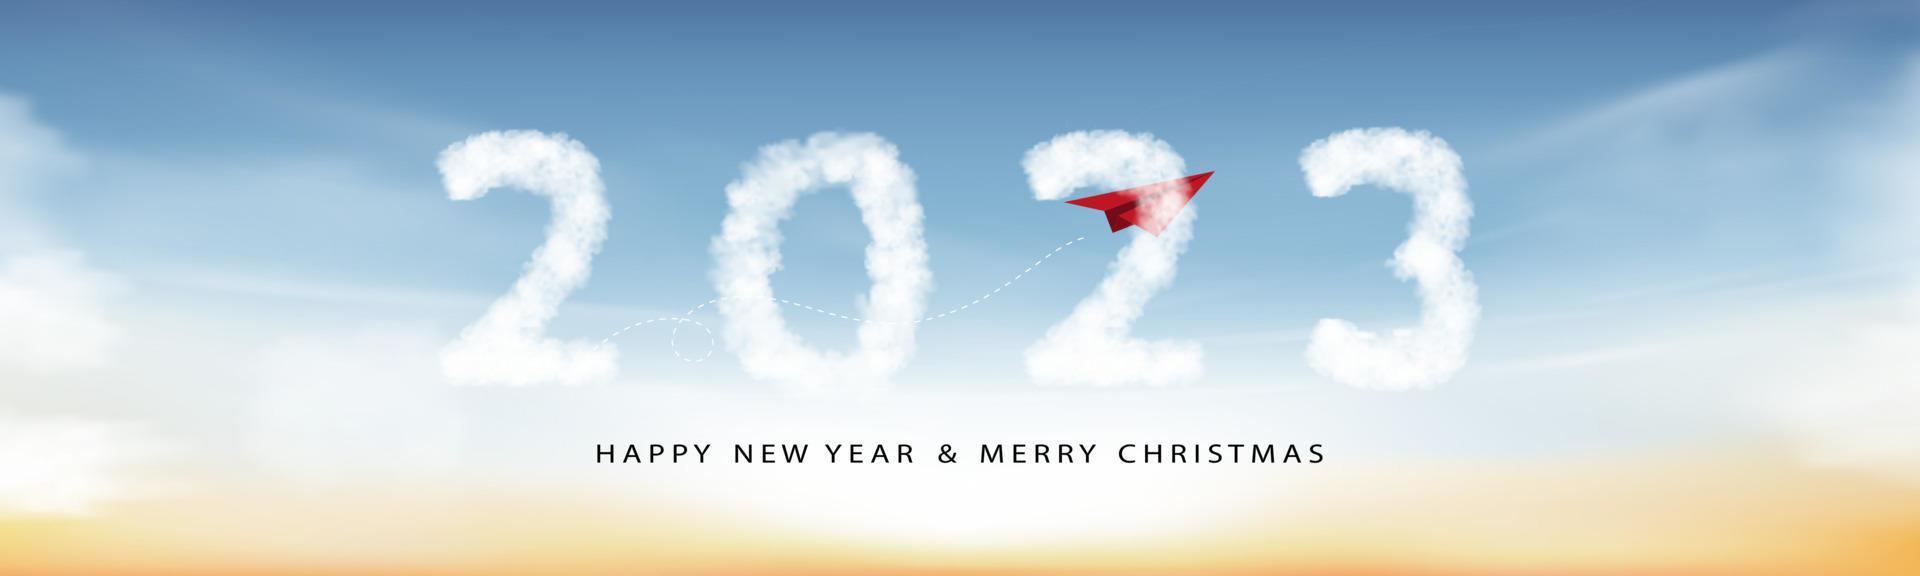 2023 guten Rutsch ins Neue Jahr-Wolken mit rotem Papierflugzeug, das zum Himmel fliegt, Horizontvektorillustrationstext 2023 auf blauem Hintergrund für Kalender, breites Fahnendesign für neues Jahr oder Weihnachtsfeiertag vektor